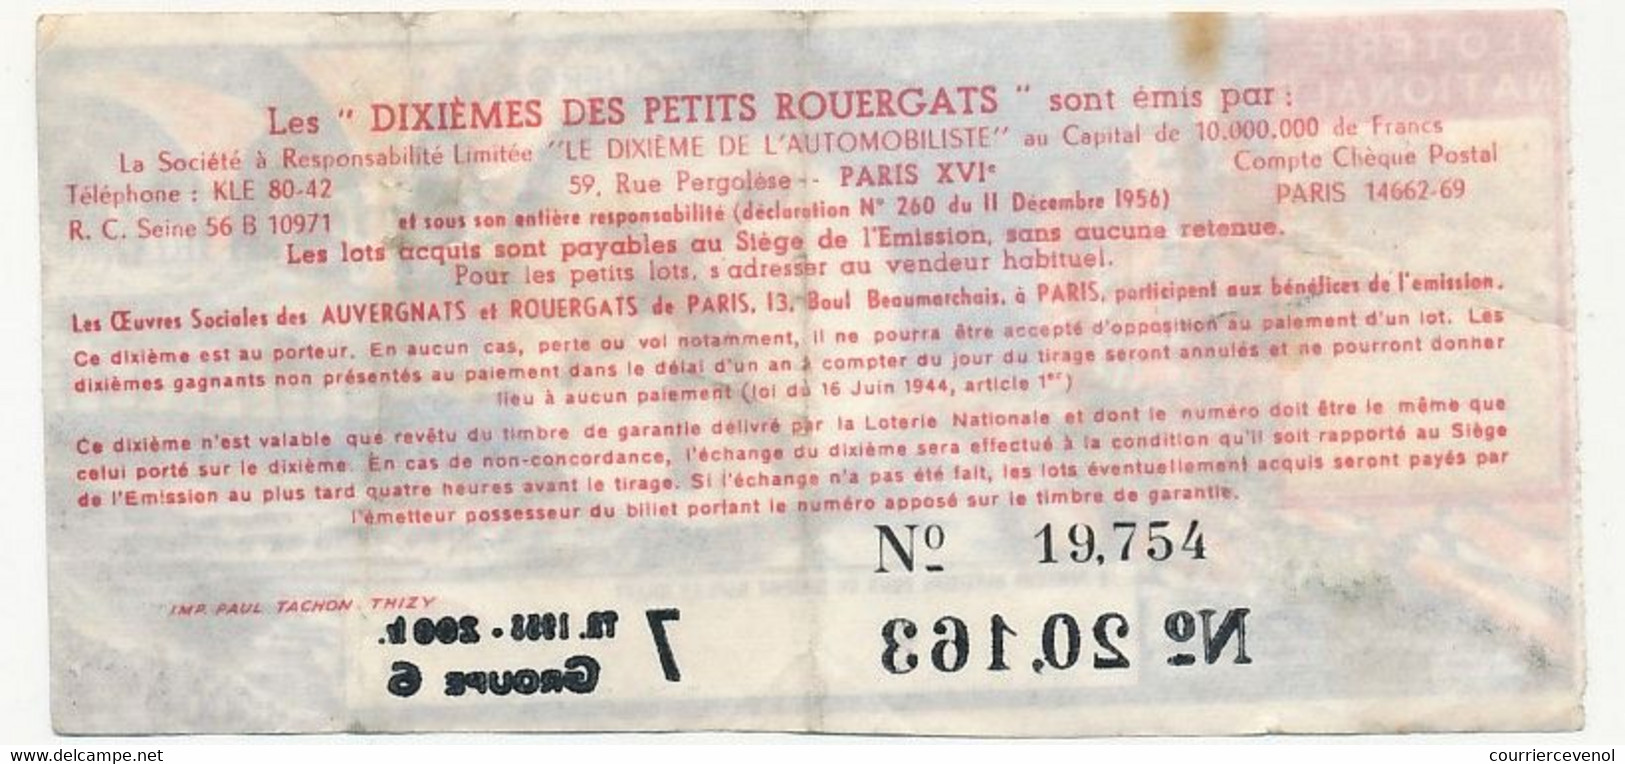 FRANCE - Loterie Nationale - 1/10ème - Le 1/10eme Des Petits Rouergats - 7eme Tranche 1958 - Lotterielose